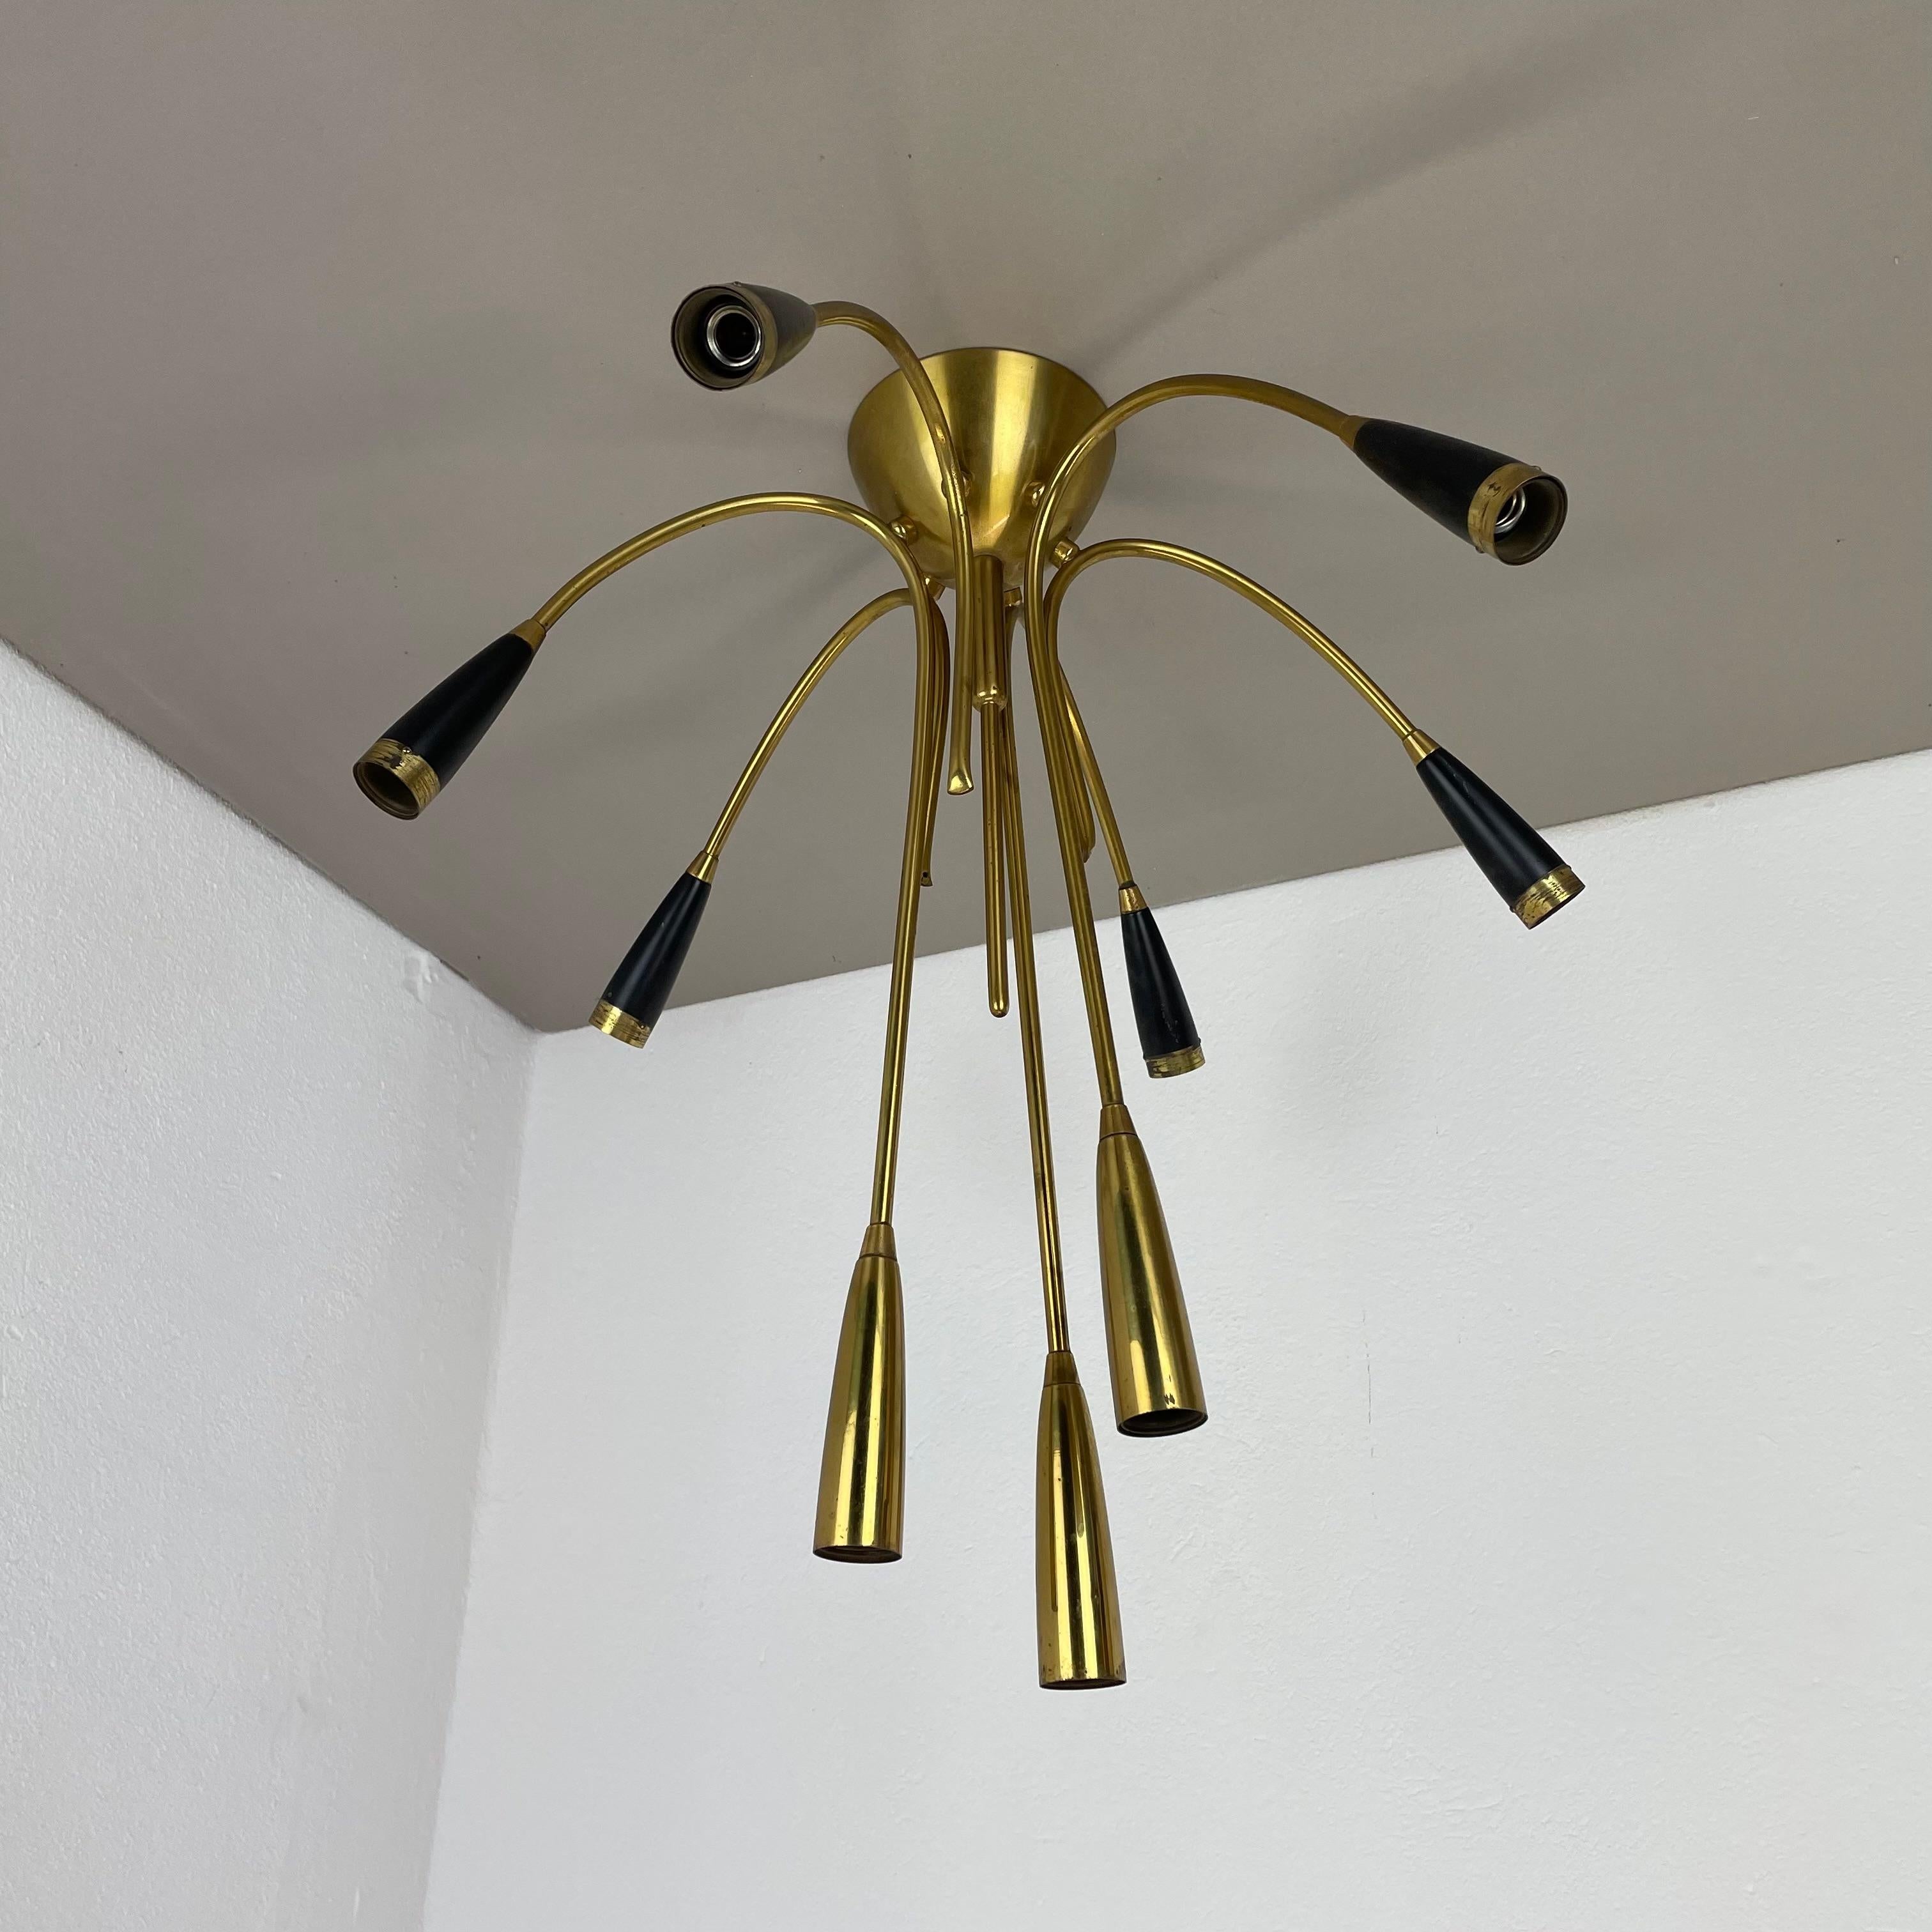 xl 9 arm Brass Stilnovo Gino Sarfatti Style Ceiling Light Flushmount Italy 1950 For Sale 11